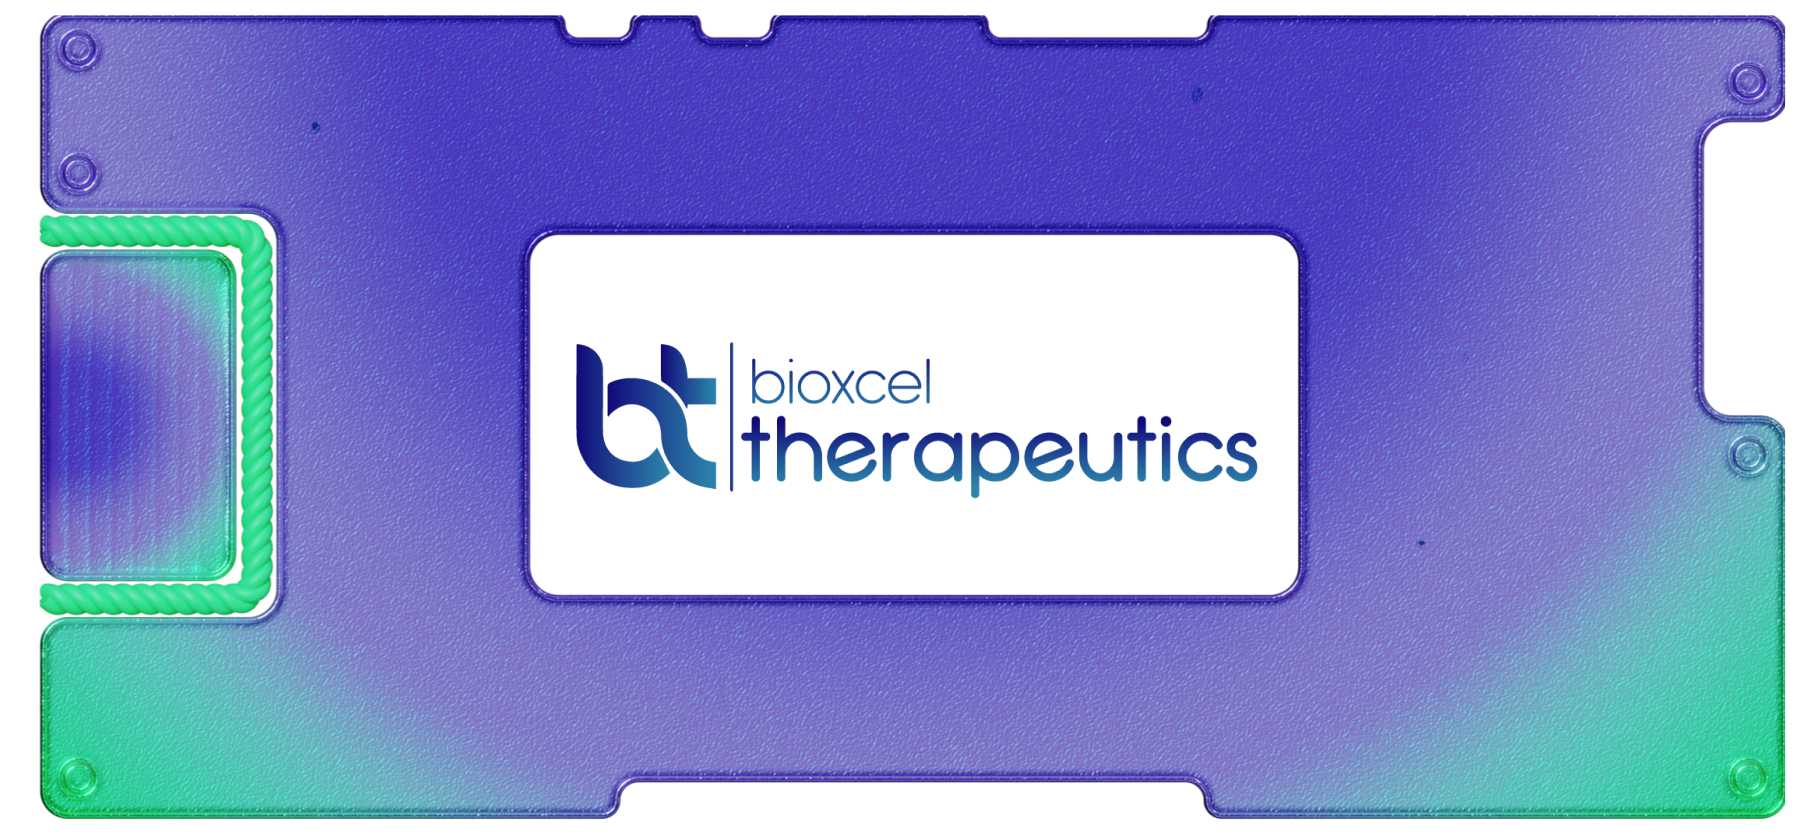 ИИ в борьбе с неврологией и раком: чем занимается BioXcel Therapeutics